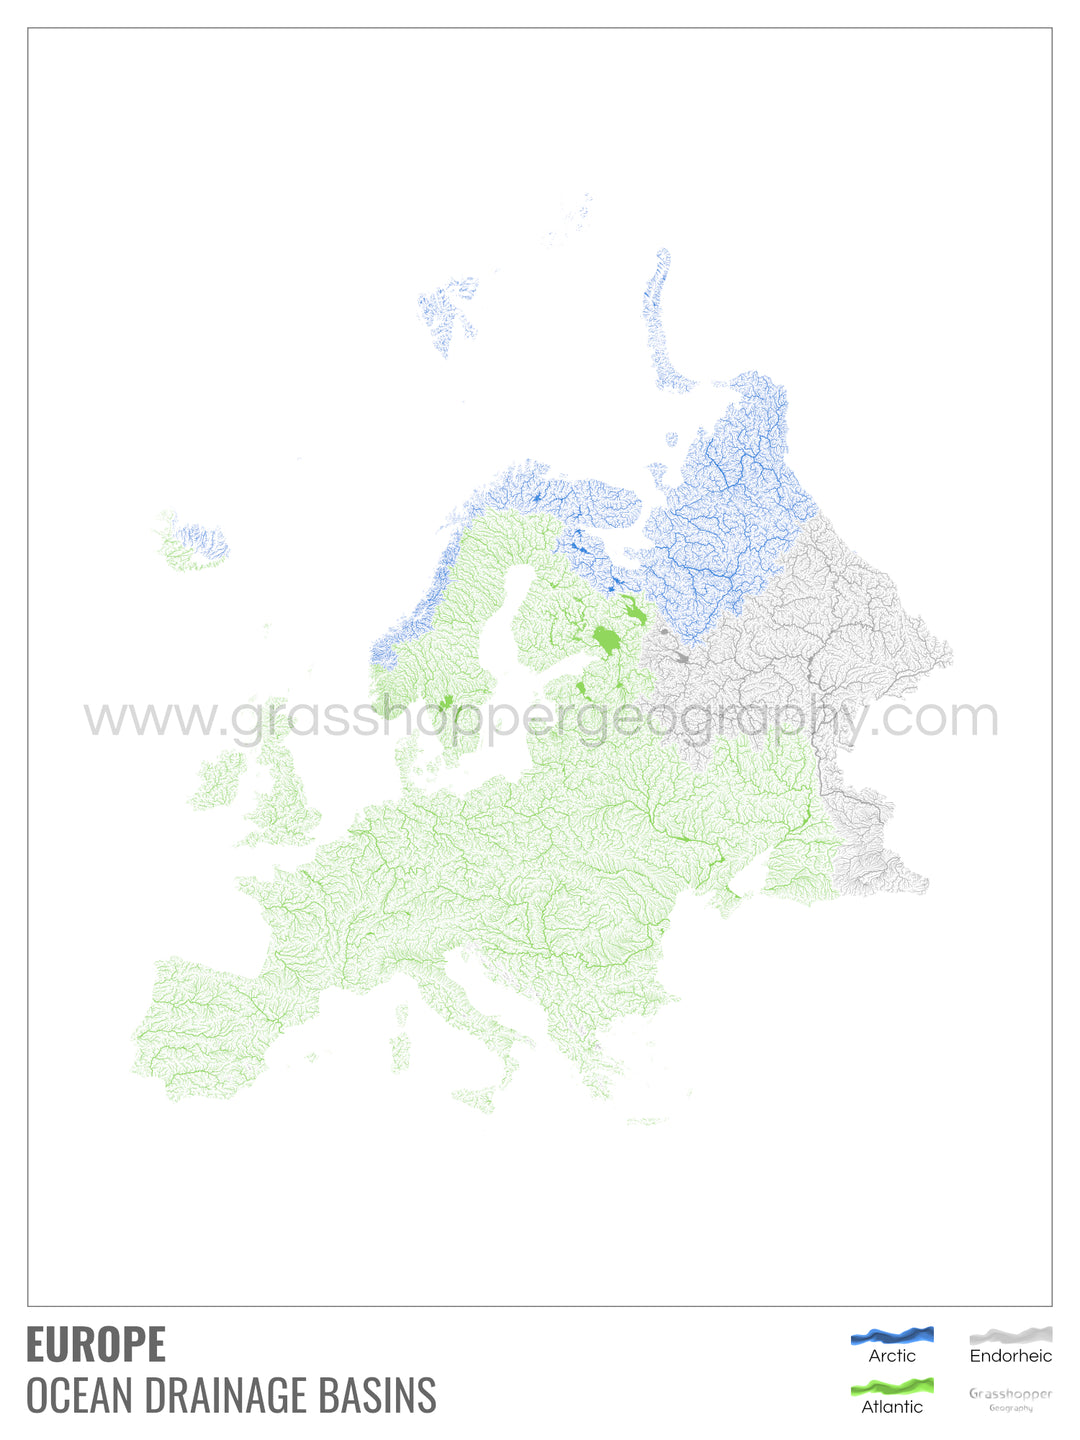 Europe - Carte des bassins hydrographiques océaniques, blanche avec légende v1 - Tirage d'art avec cintre